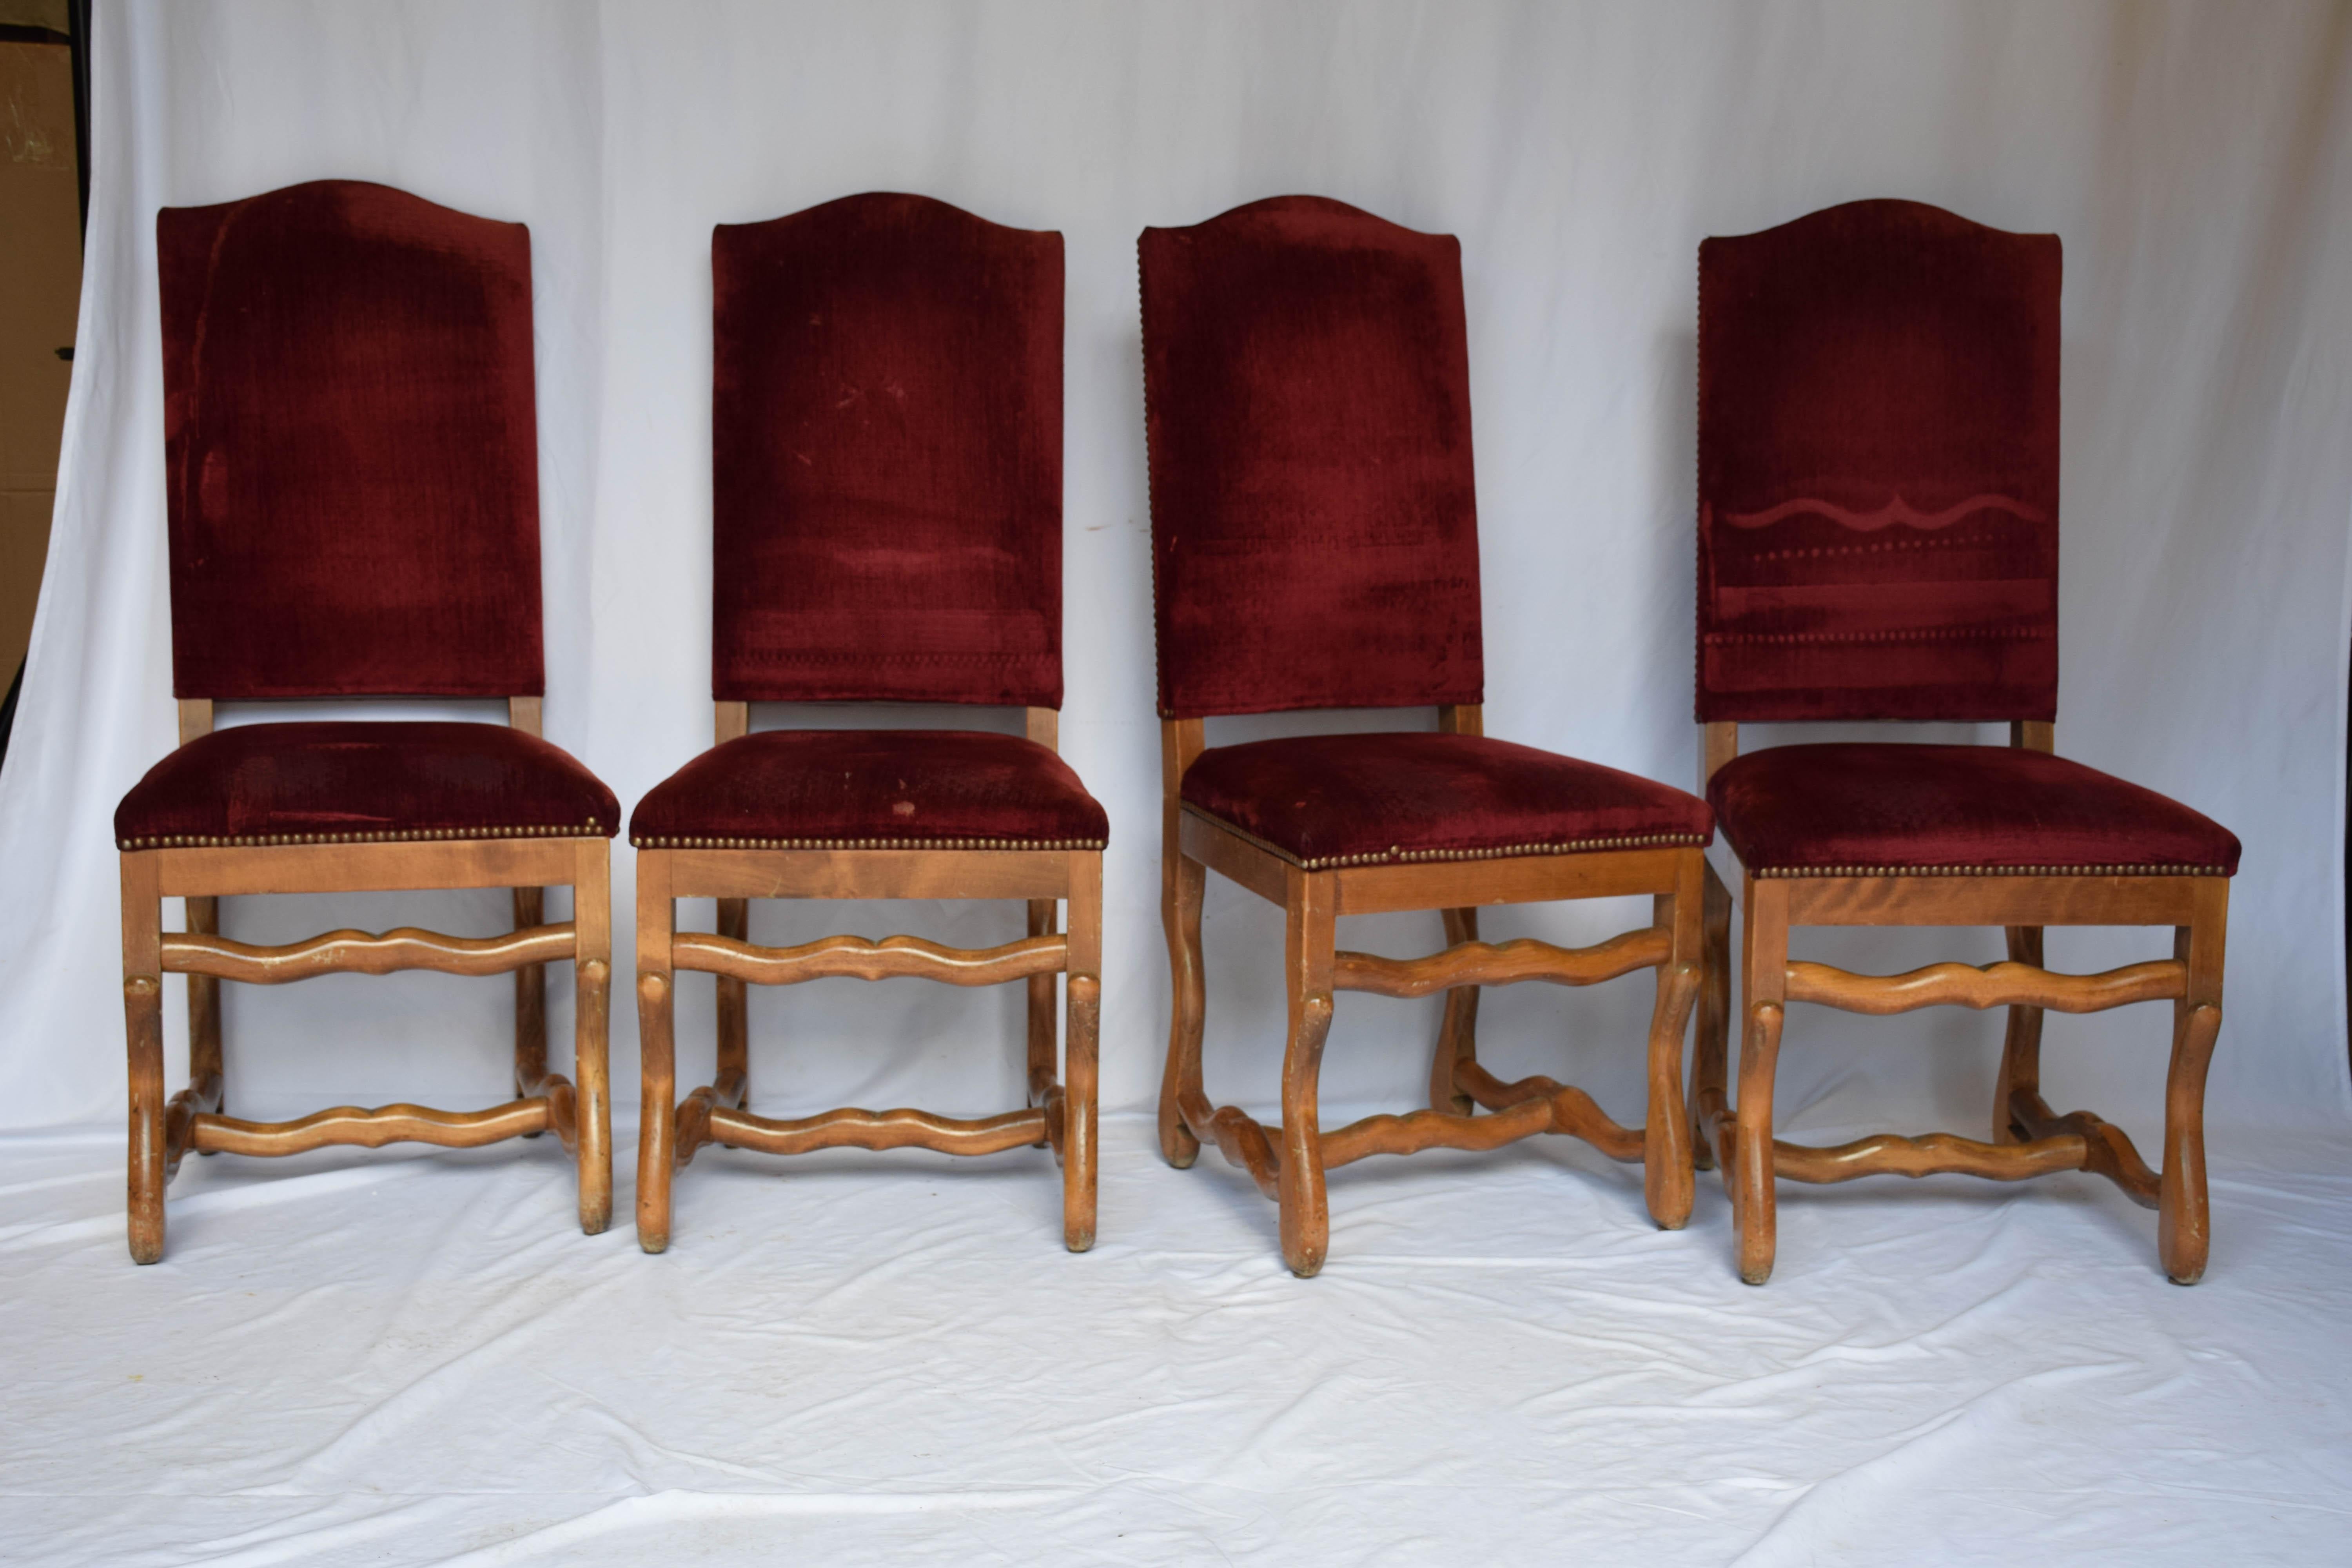 Cet ensemble de chaises Os de Mouton est recouvert de velours rouge. Les pieds et les accoudoirs en bois courbé sont en finition teintée miel et sont dans le style de la période Louis XIV. Ils feraient un bel ajout à n'importe quelle table de salle